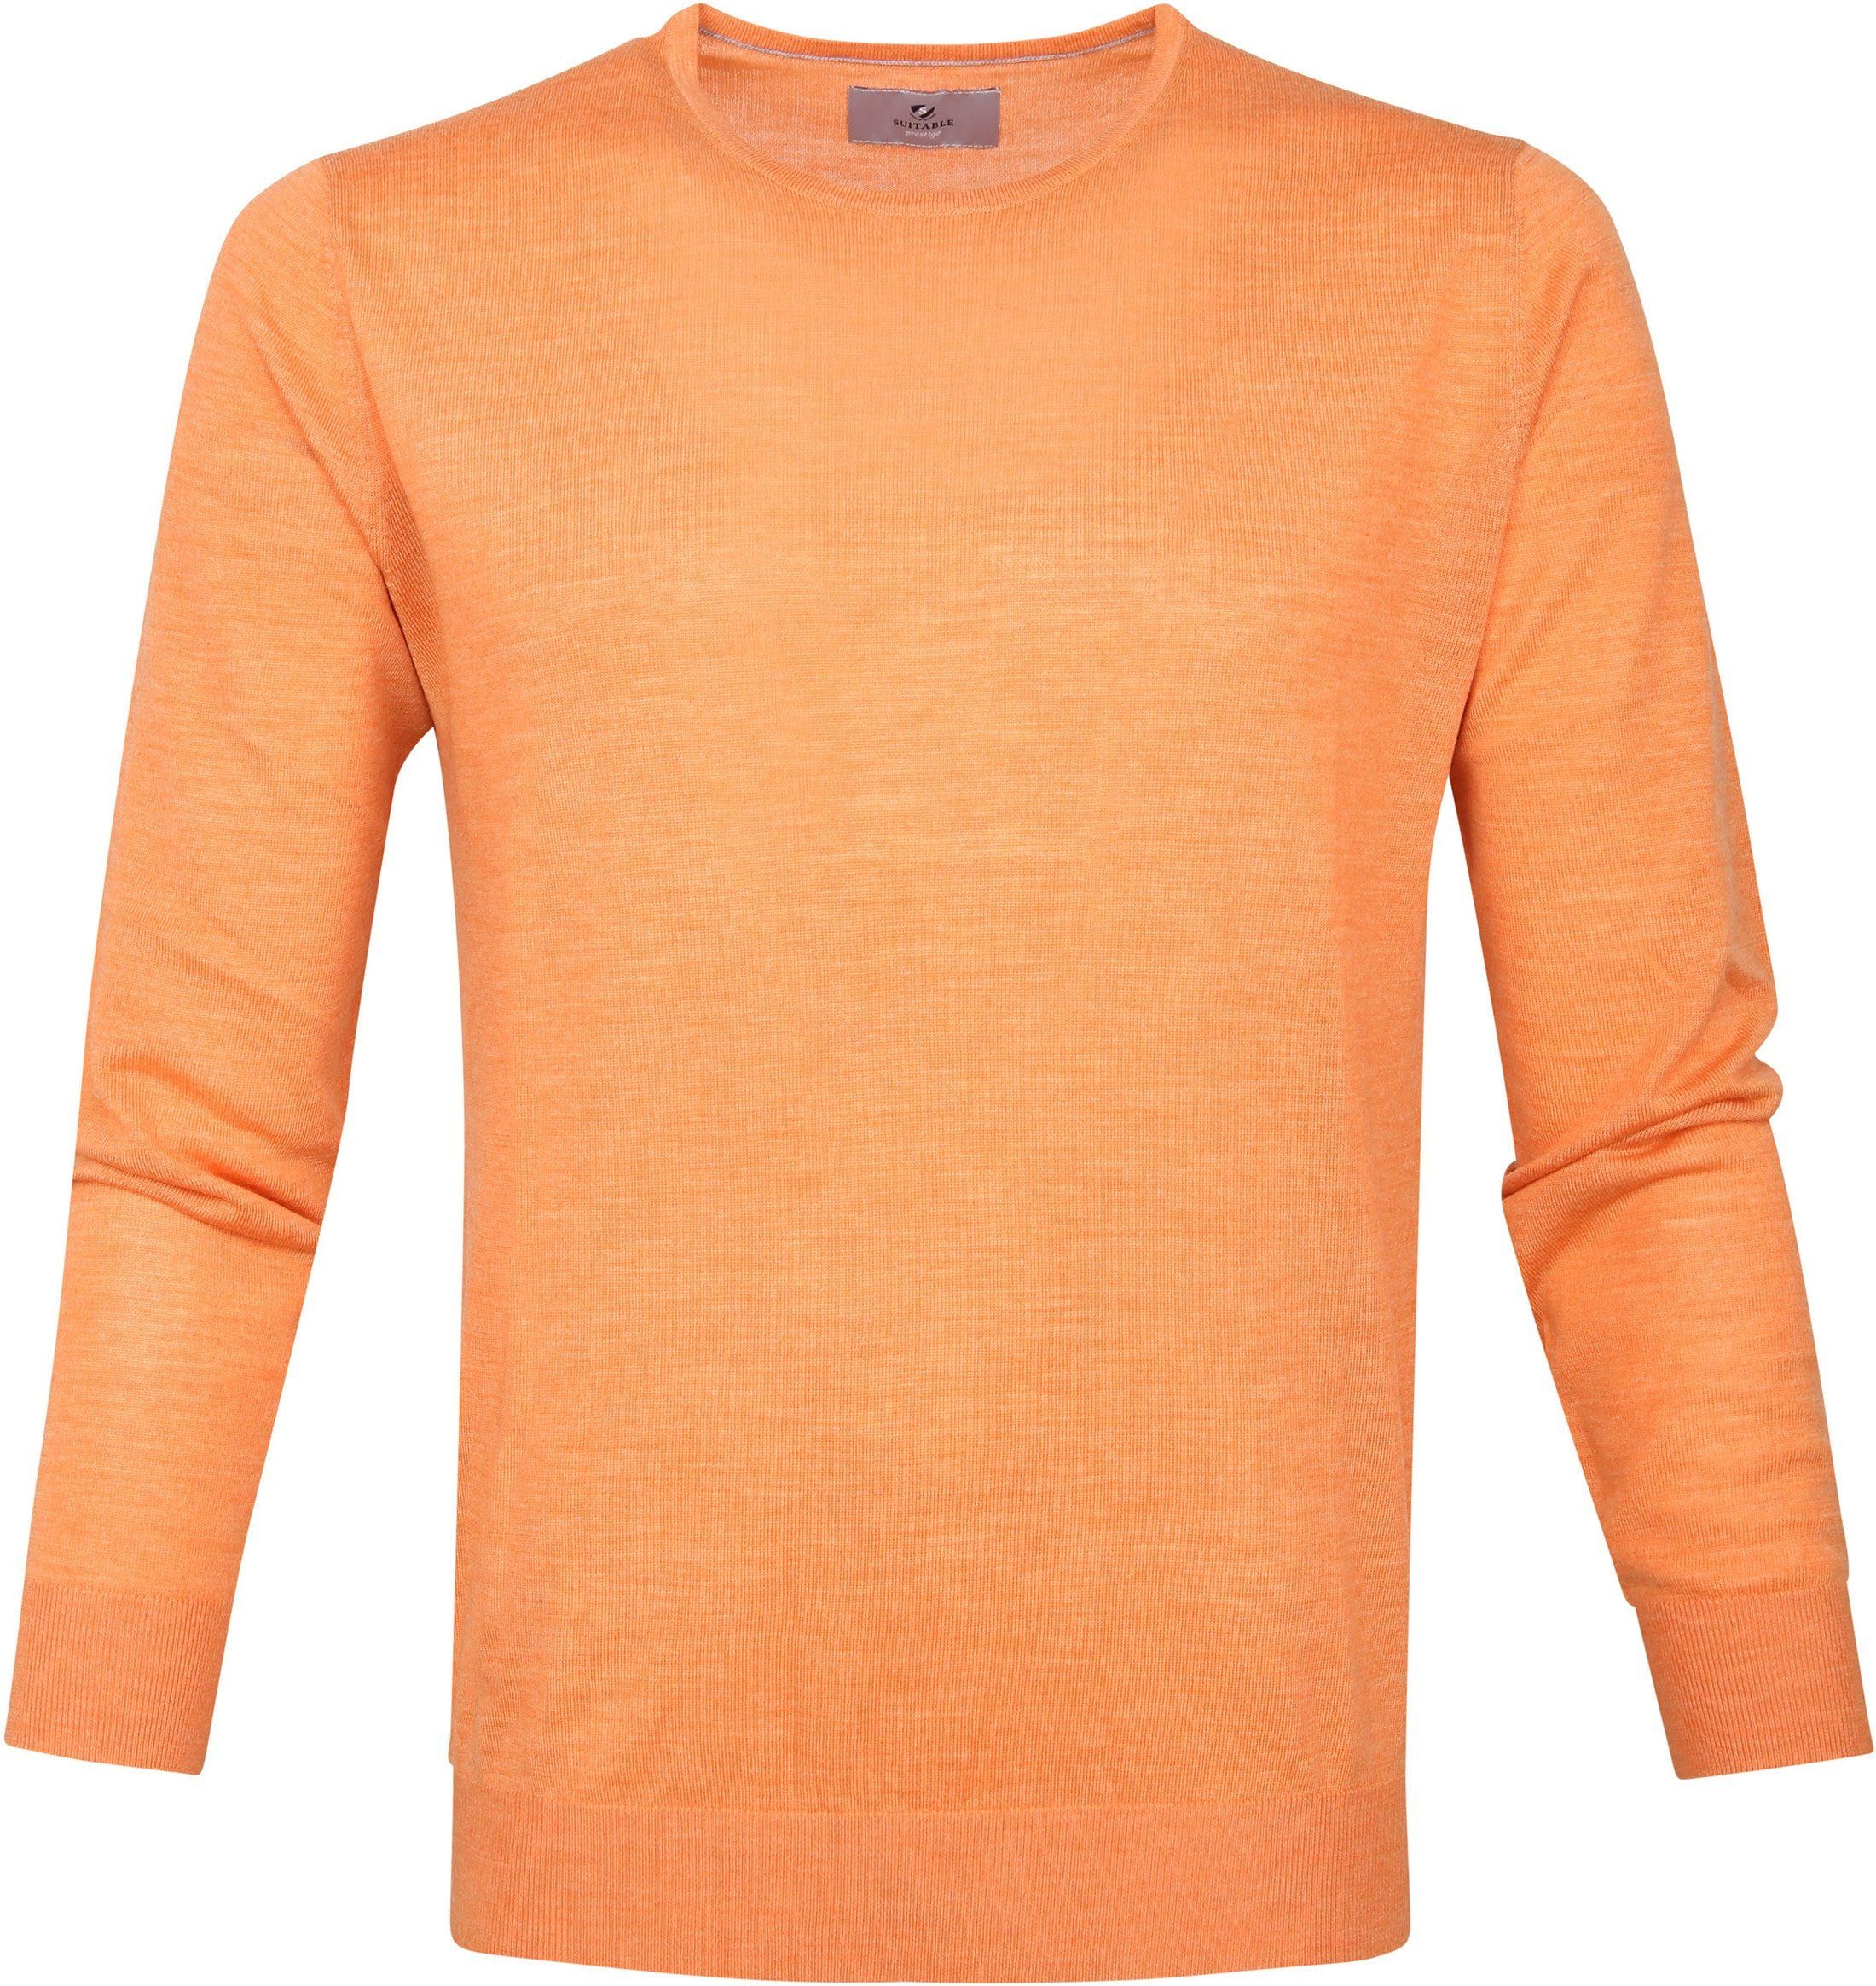 Suitable Prestige Merino Pullover Orange size L